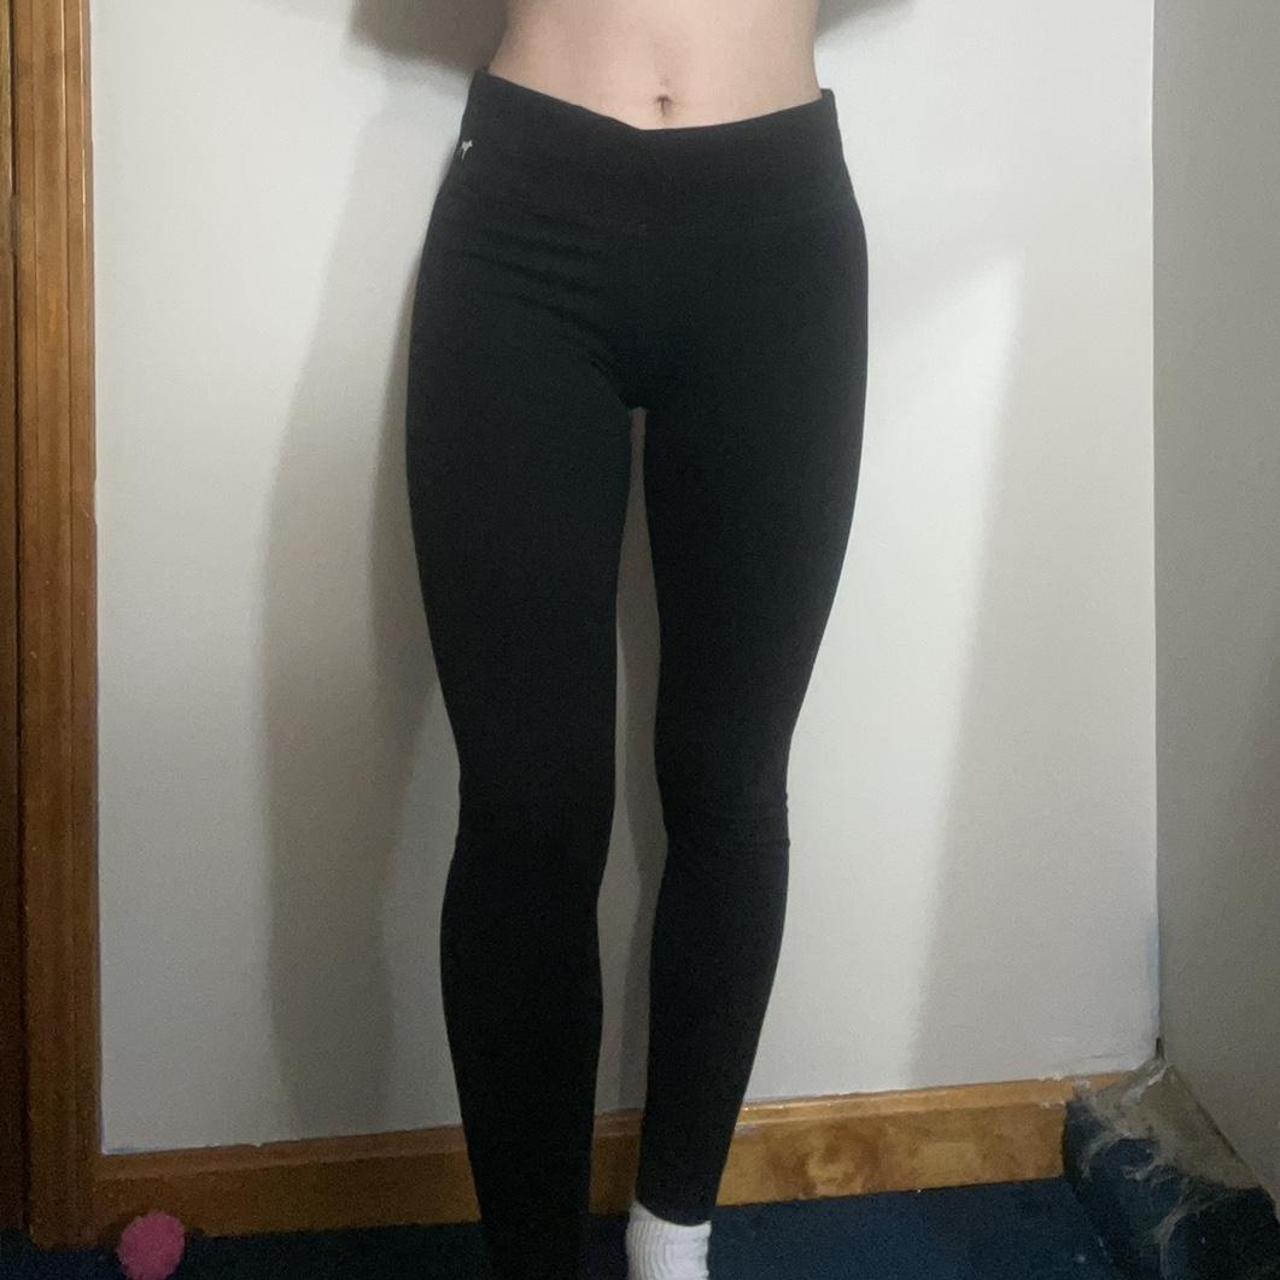 Victoria Secret Yoga Pants / Size M / Worn but good